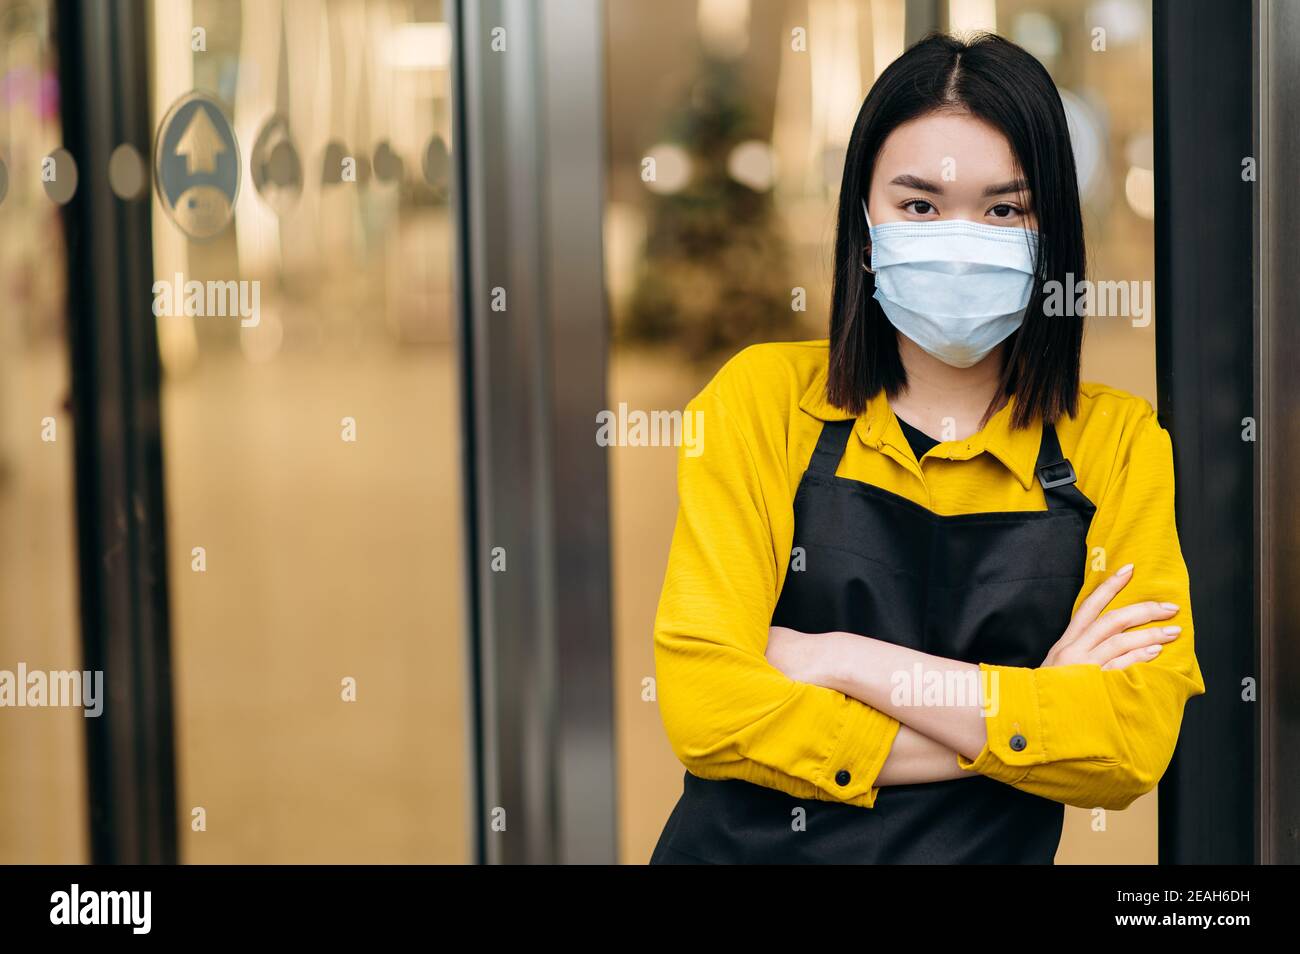 Eine junge asiatische Kellnerin oder Inhaberin eines Restaurants, Cafés oder Shops in einer Schutzmaske und einer Schürze steht am Eingang. Kleinunternehmen inmitten der Coronavirus-Pandemie Stockfoto